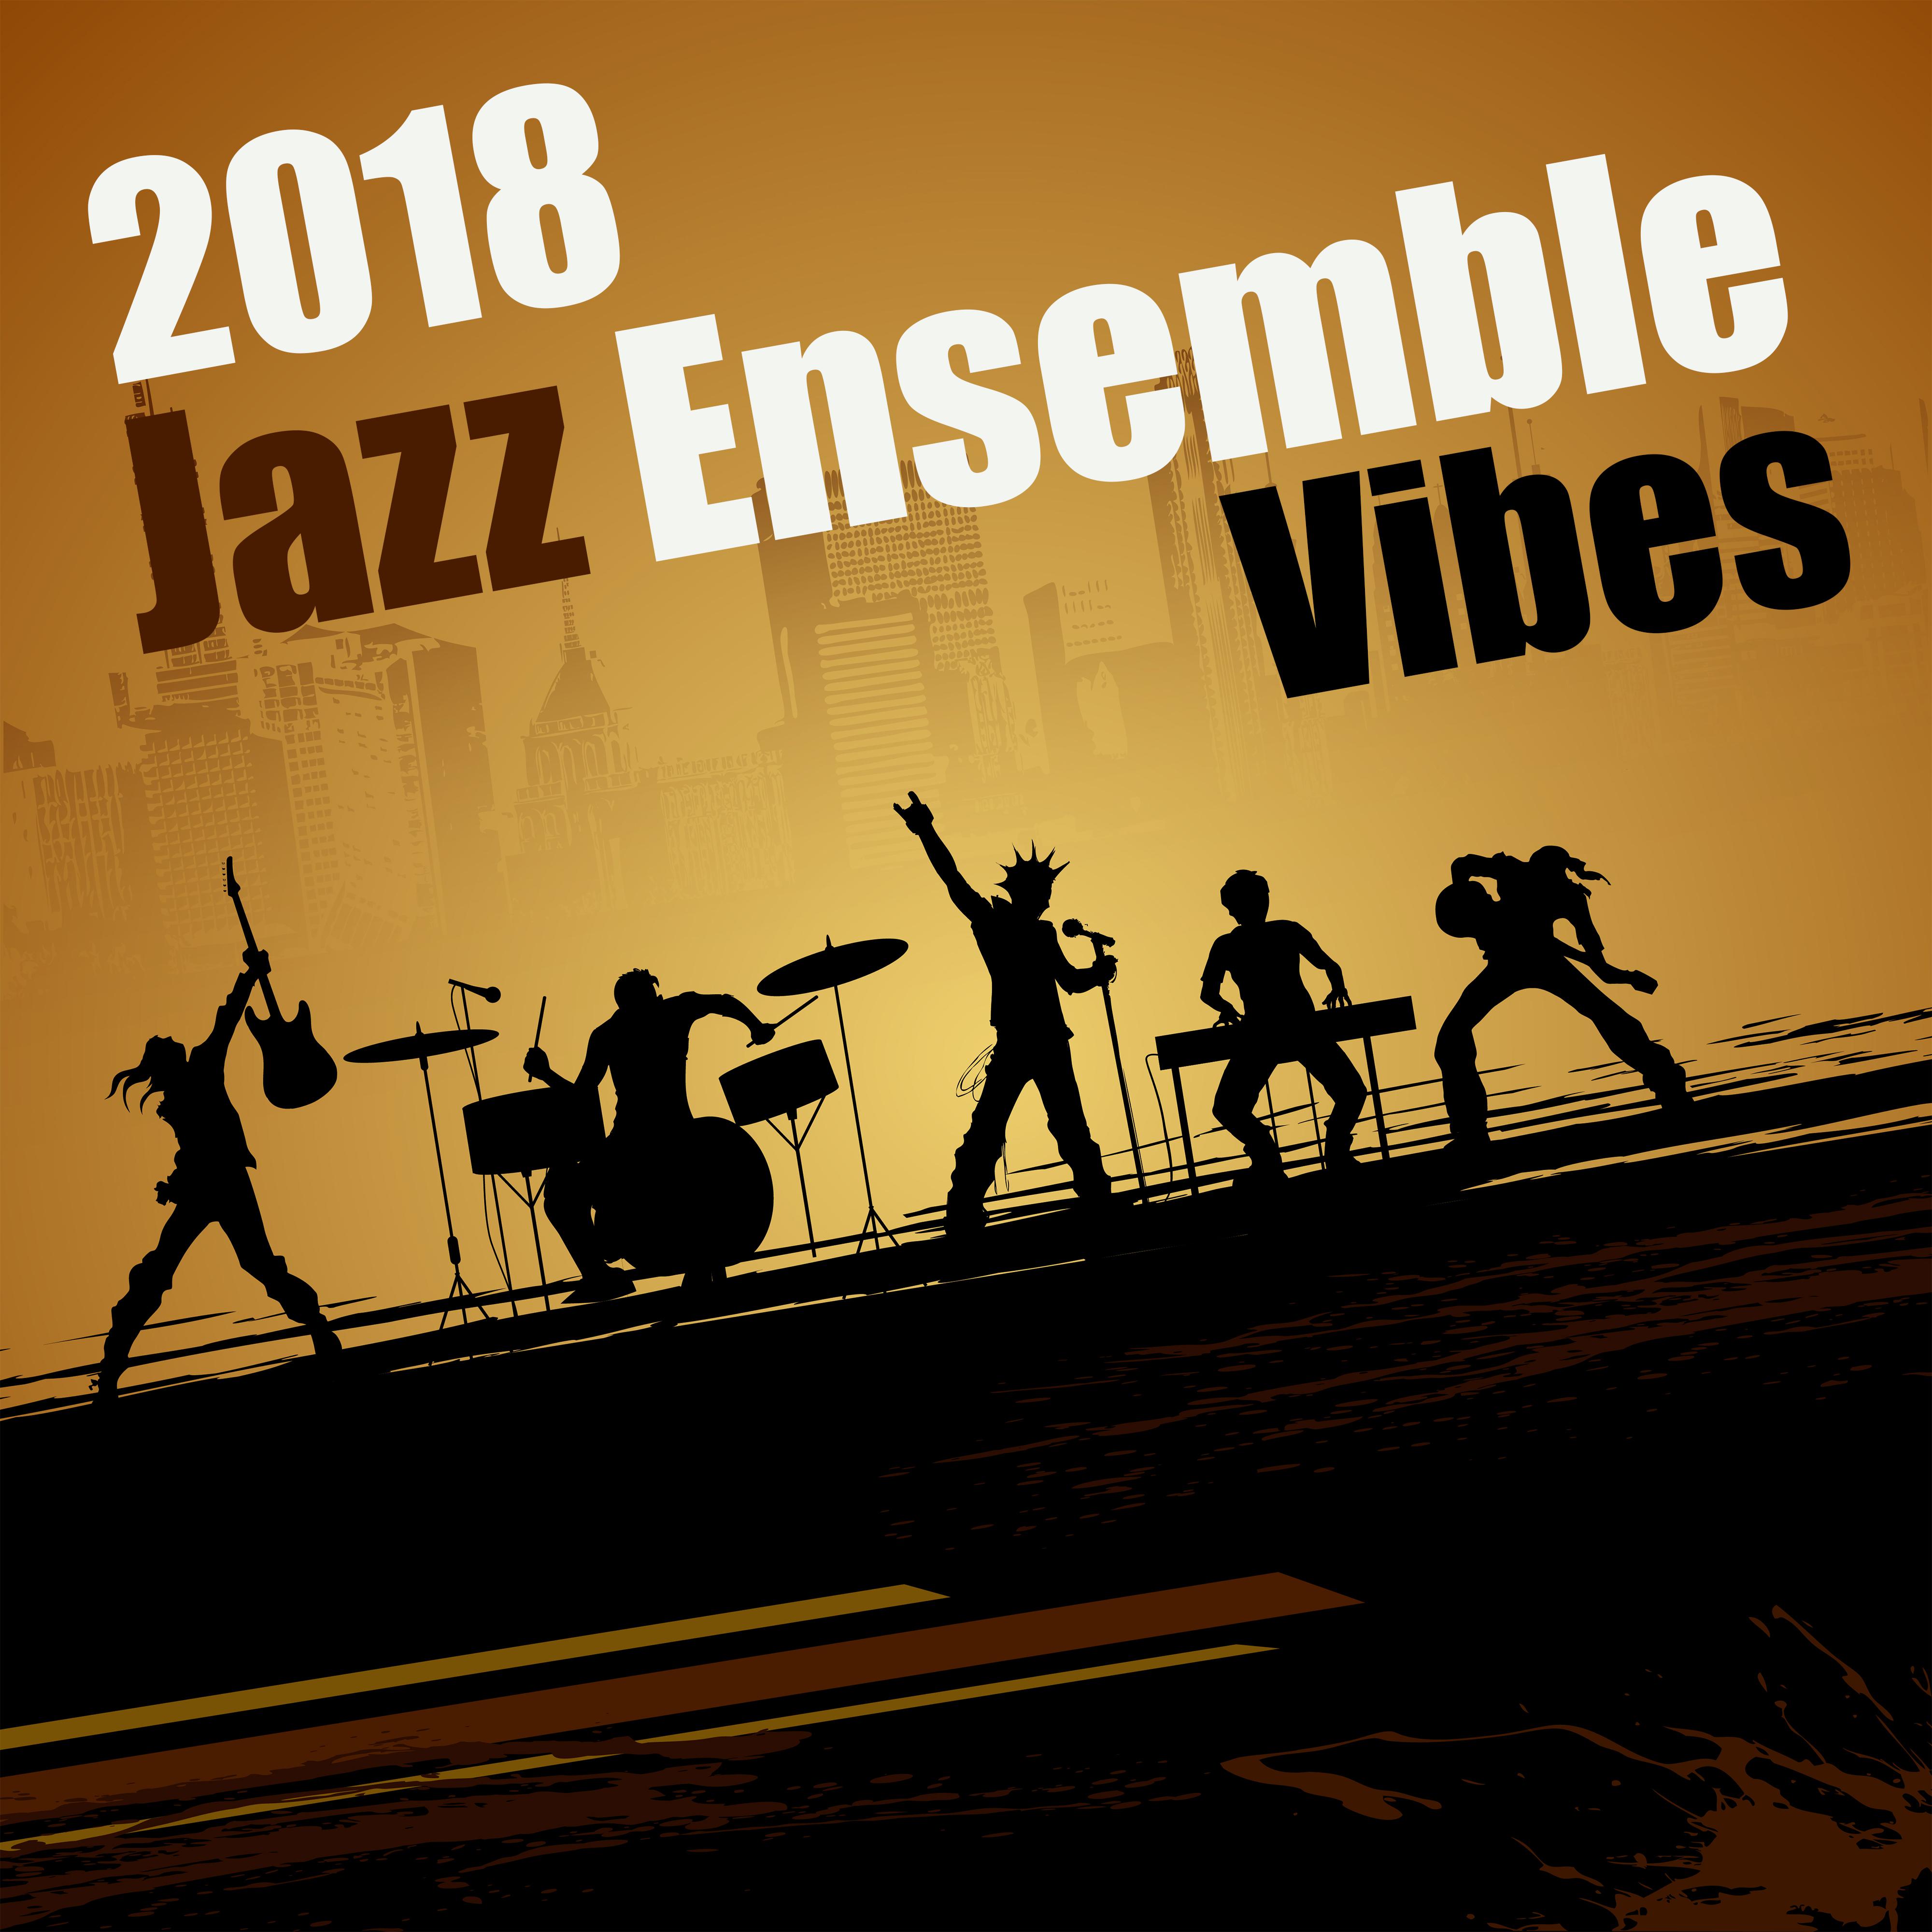 2018 Jazz Ensemble Vibes